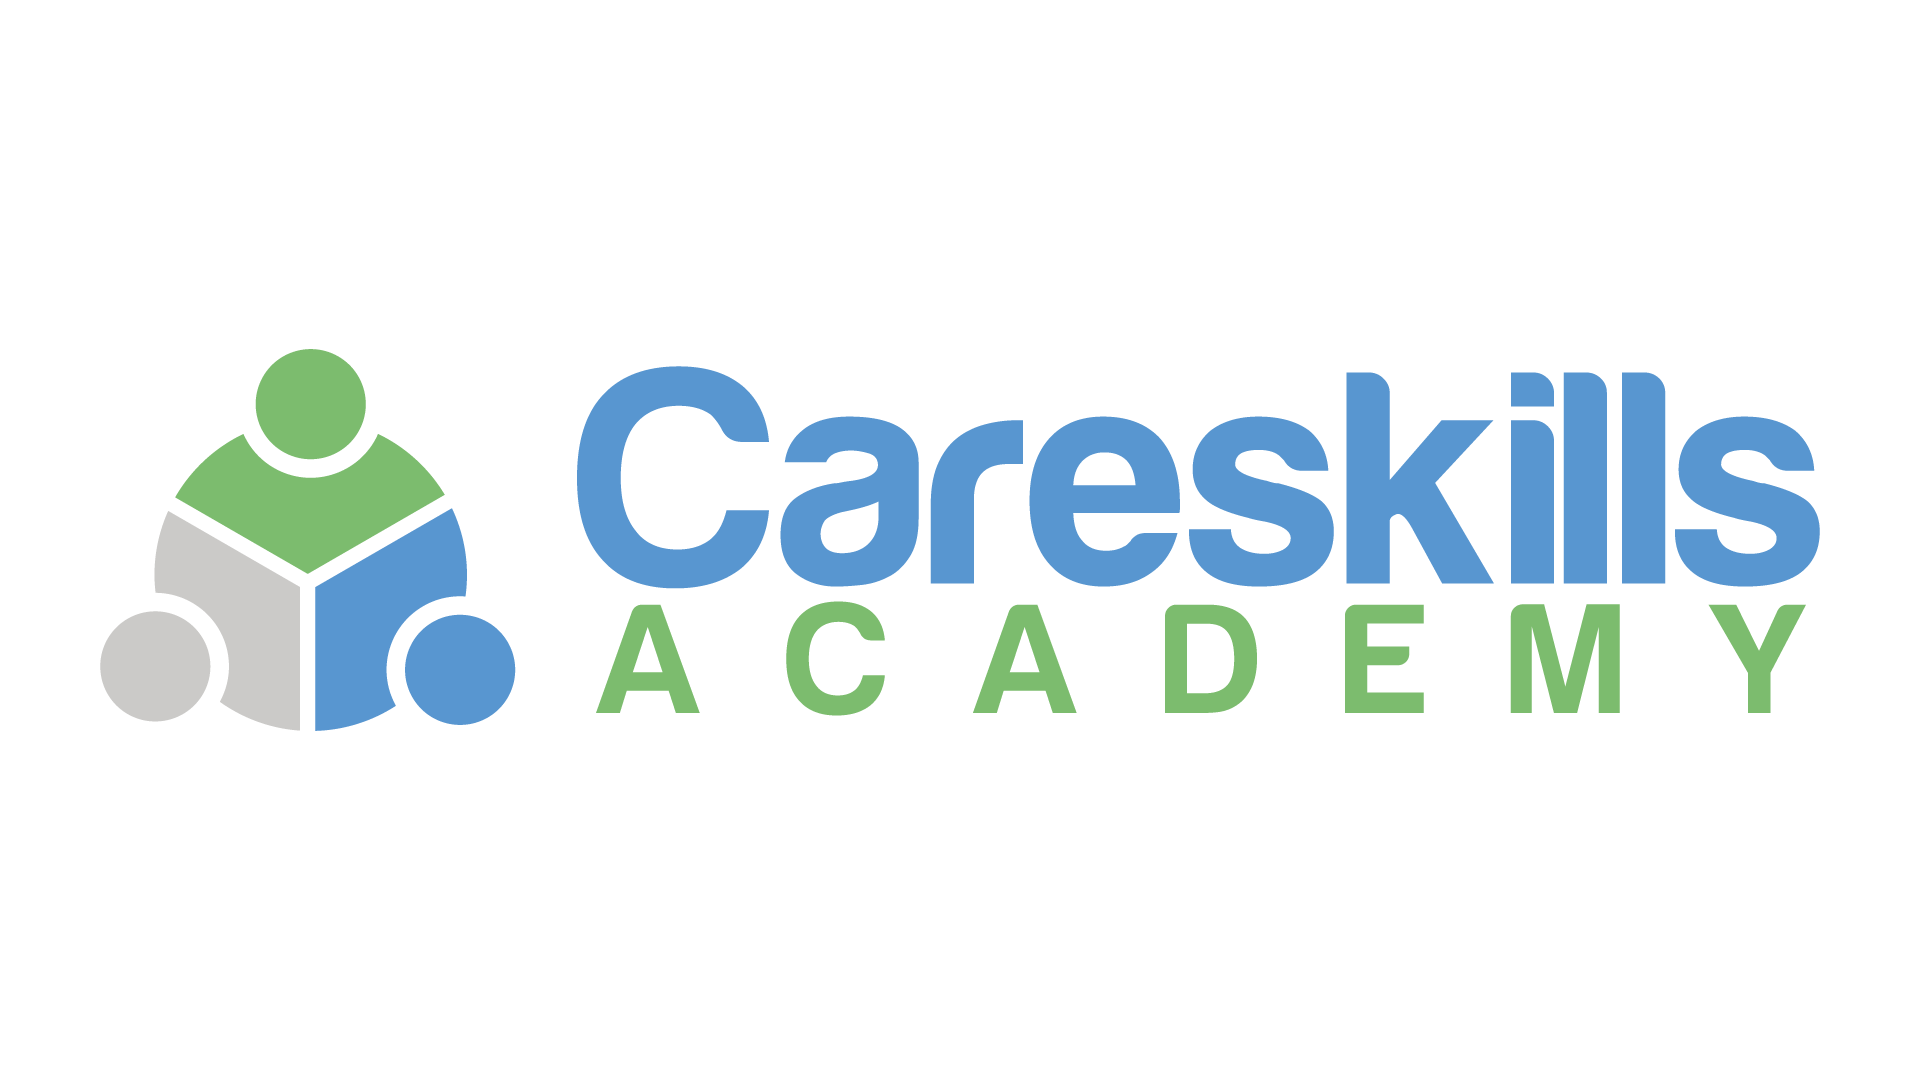 Care.com Logo - Care Certificate Courses. Online Care Certificate Training